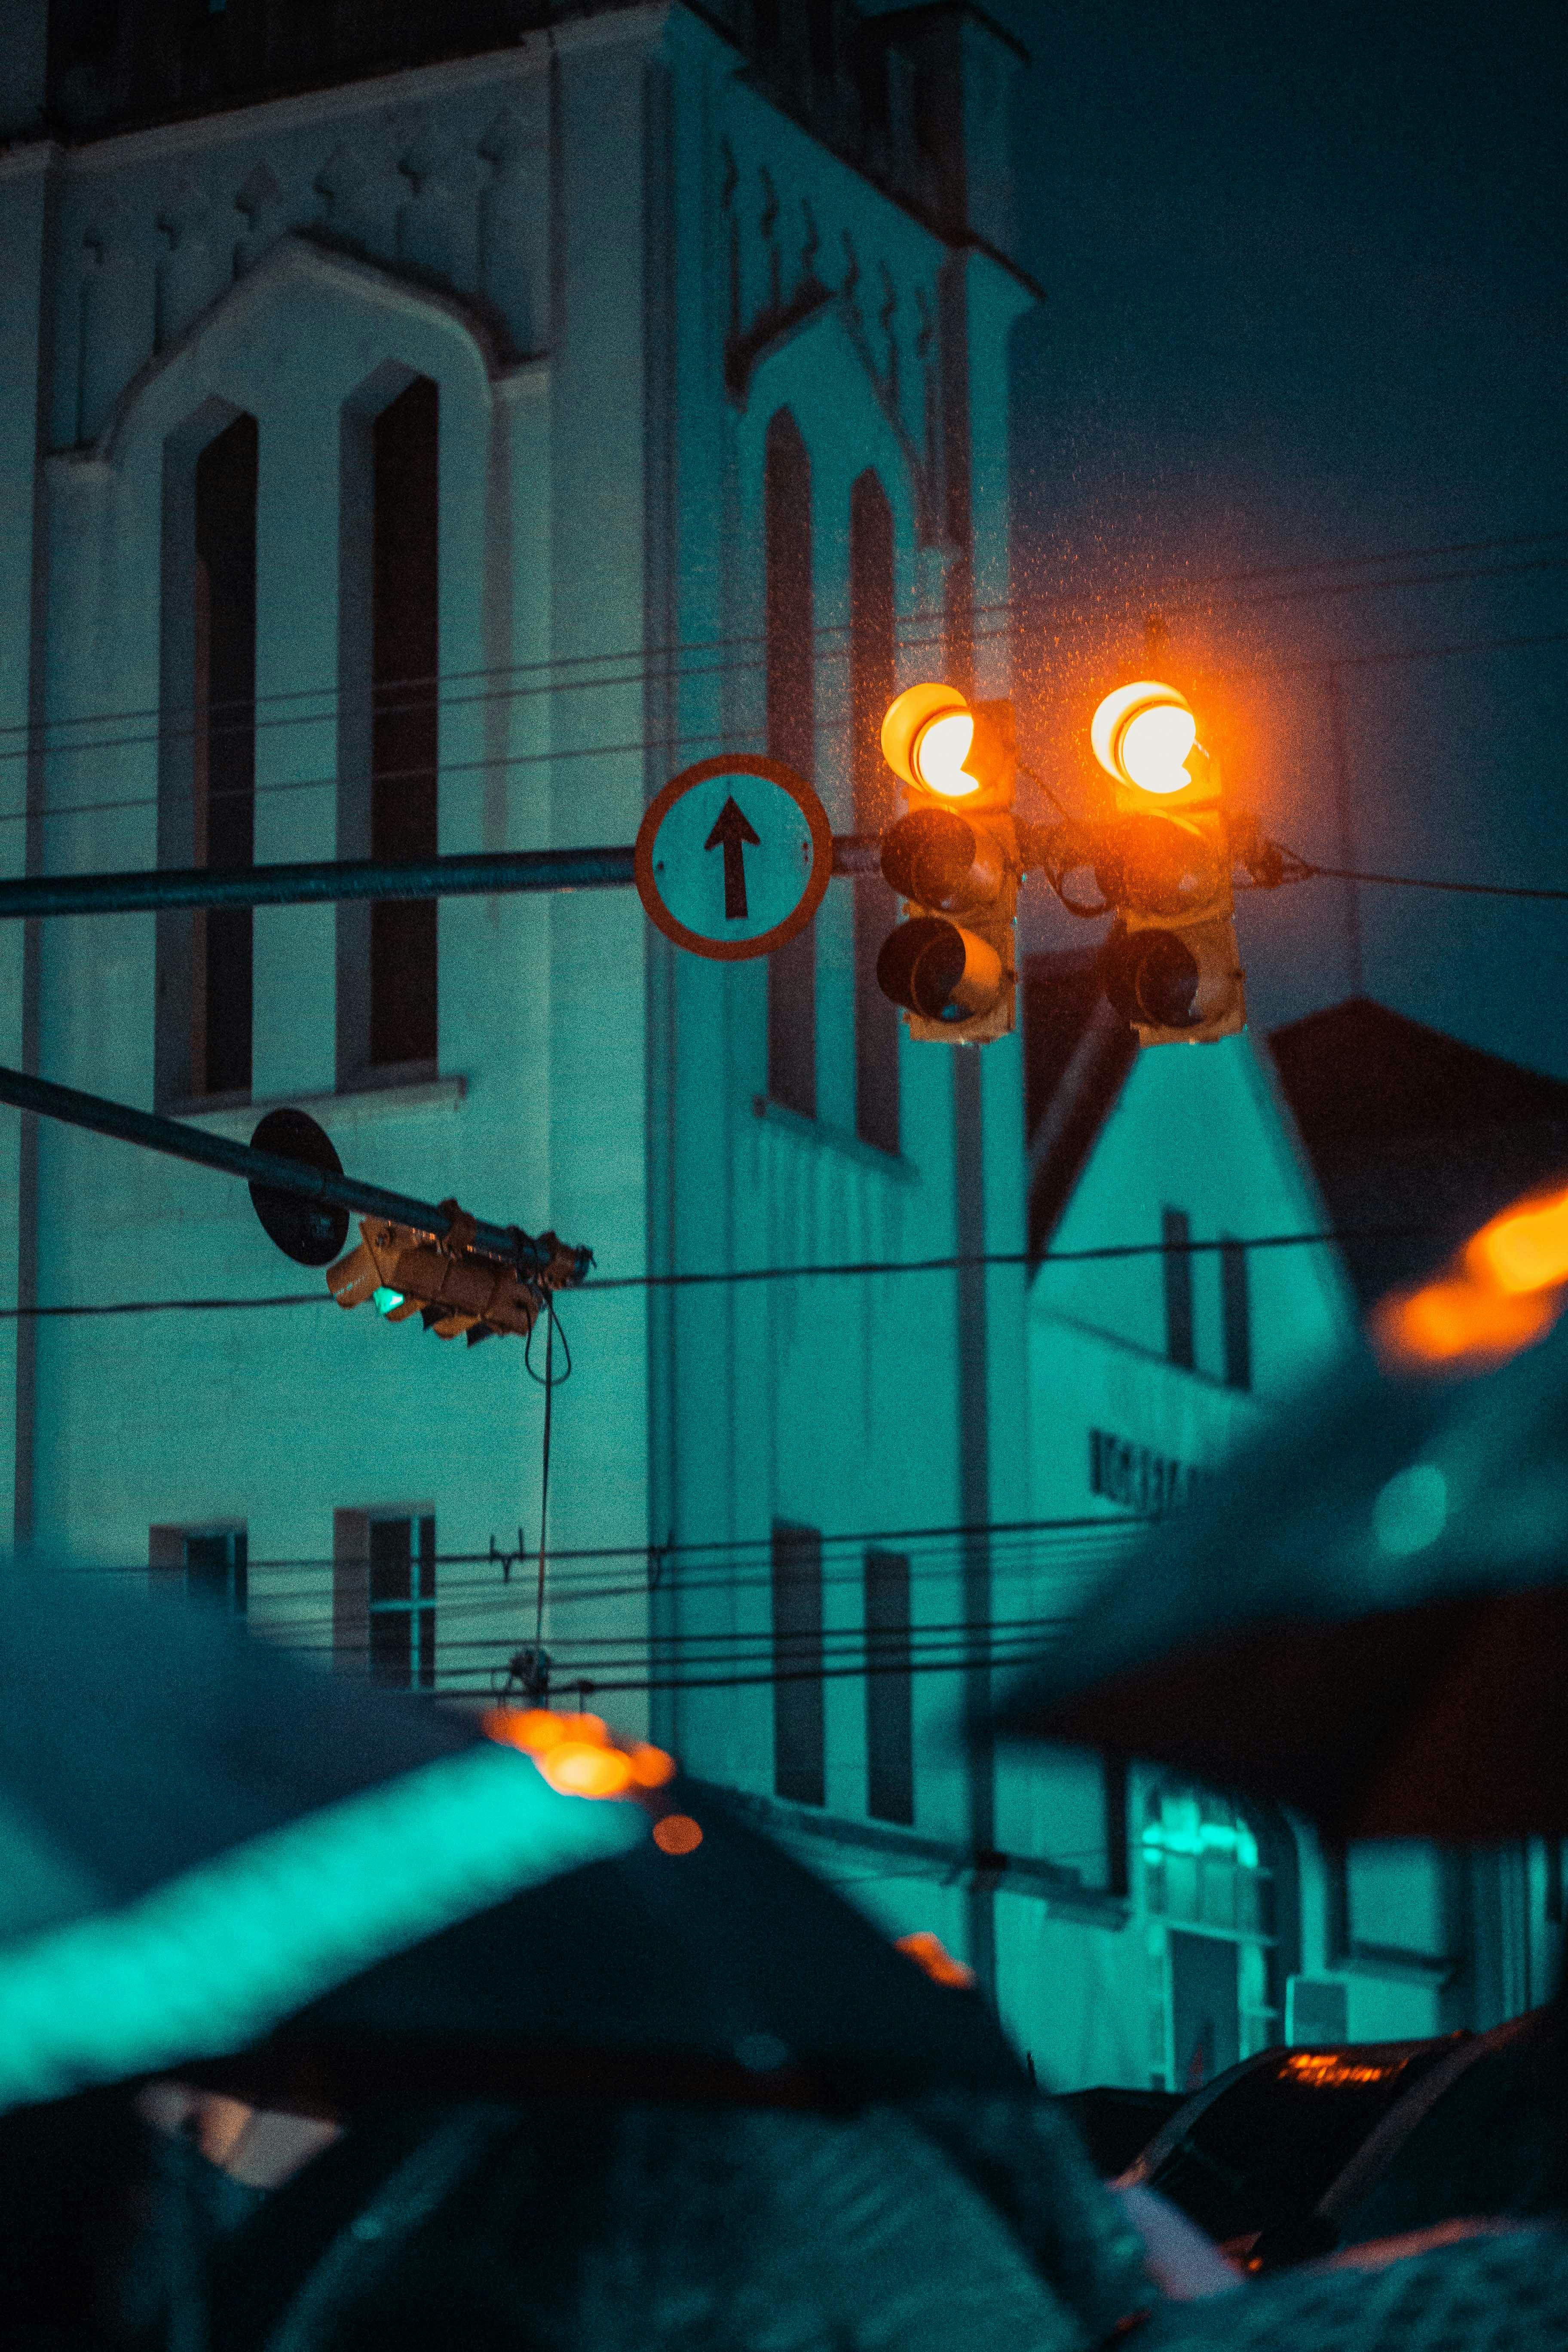 Mời bạn đến khám phá bức ảnh về đèn giao thông đầy màu sắc và sự hiện đại để cảm nhận sự phát triển của thành phố.